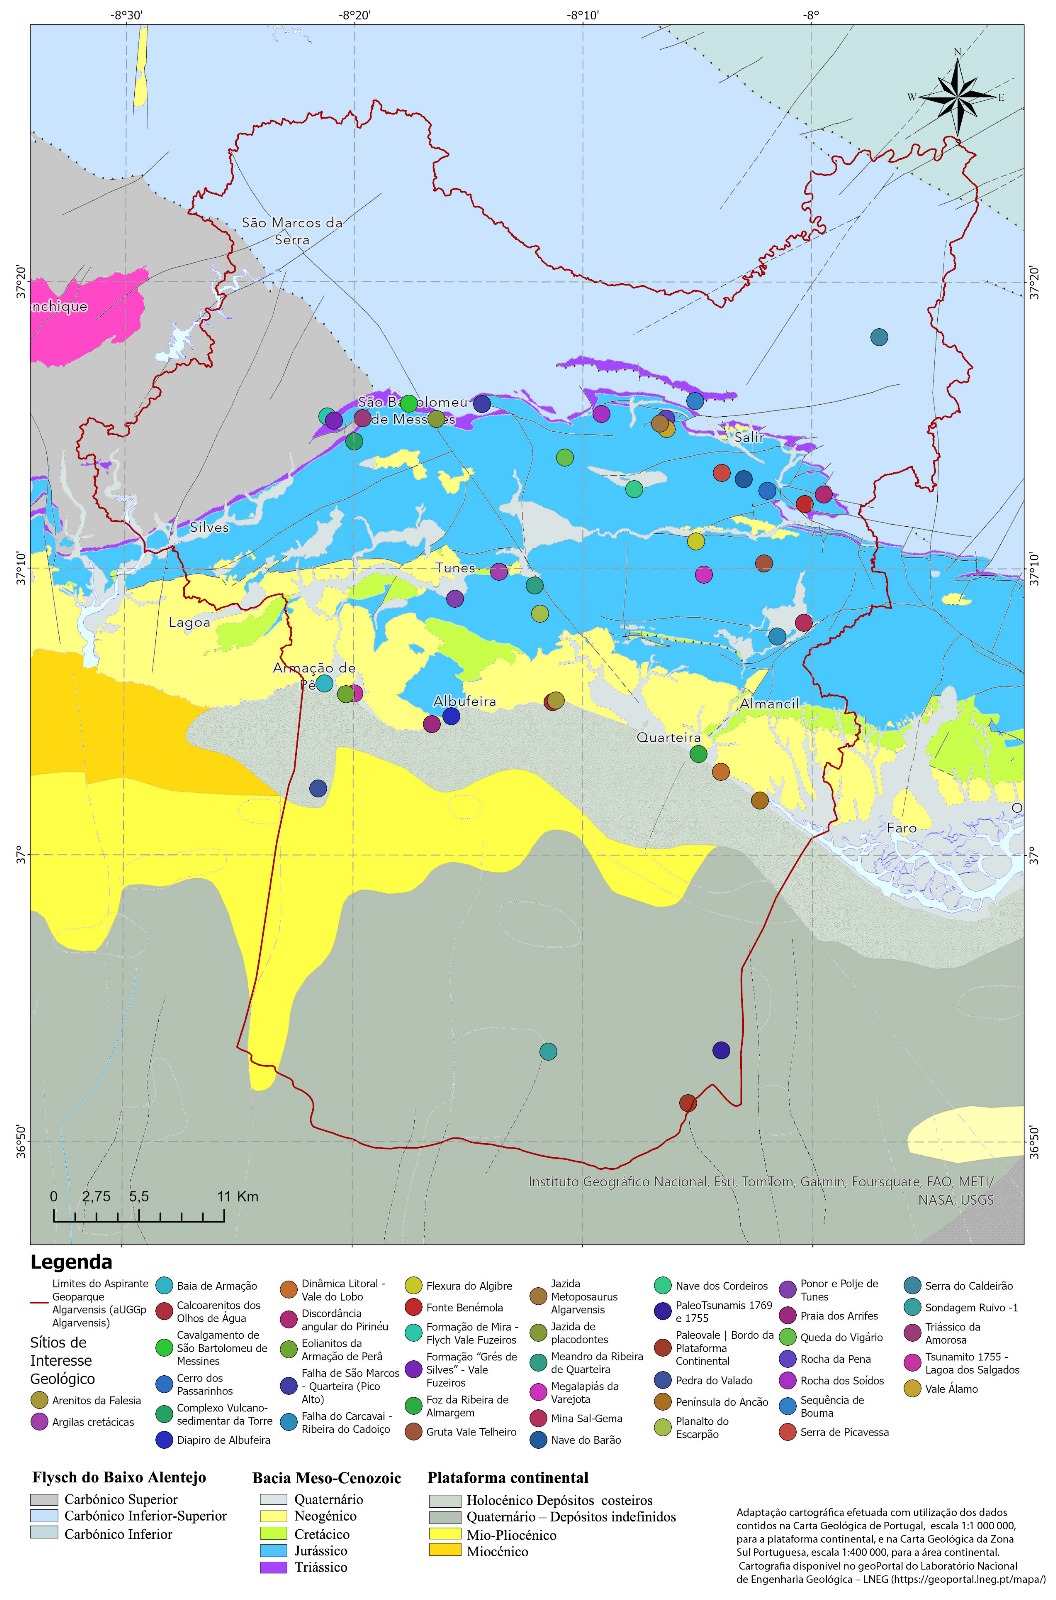 Mapa História Geológica